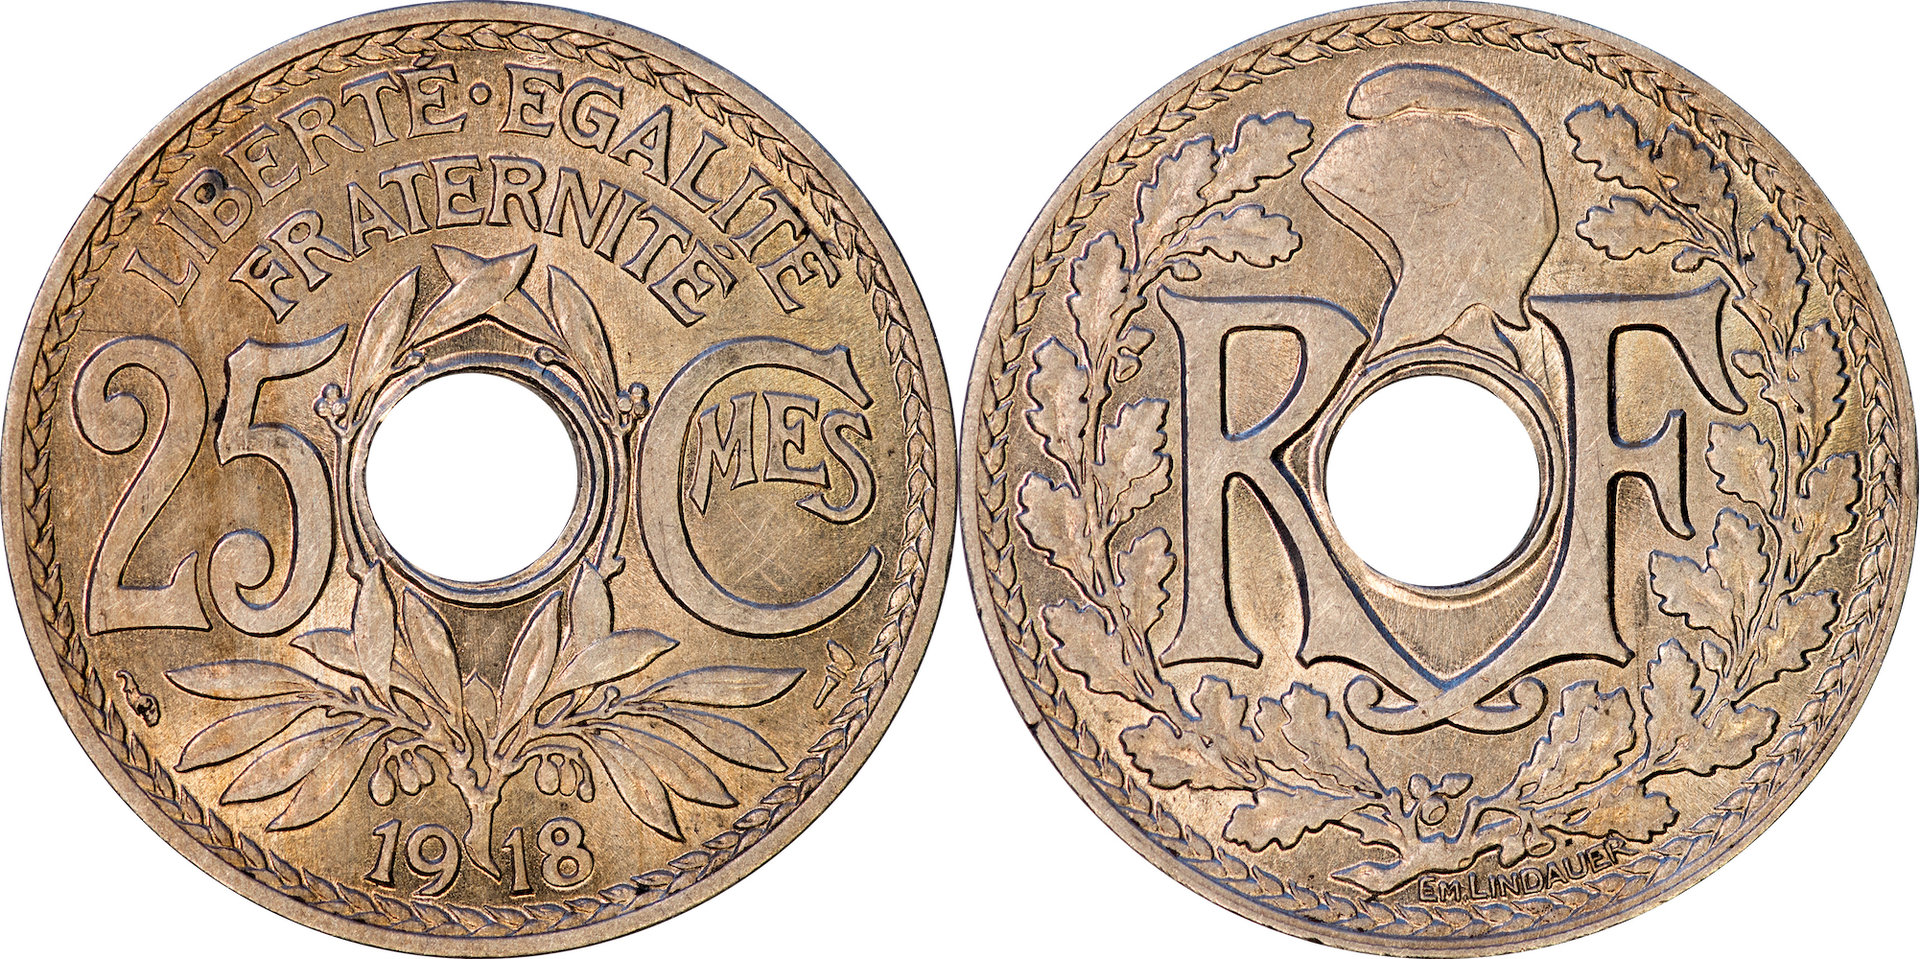 France - 1918 25 Centimes.jpg